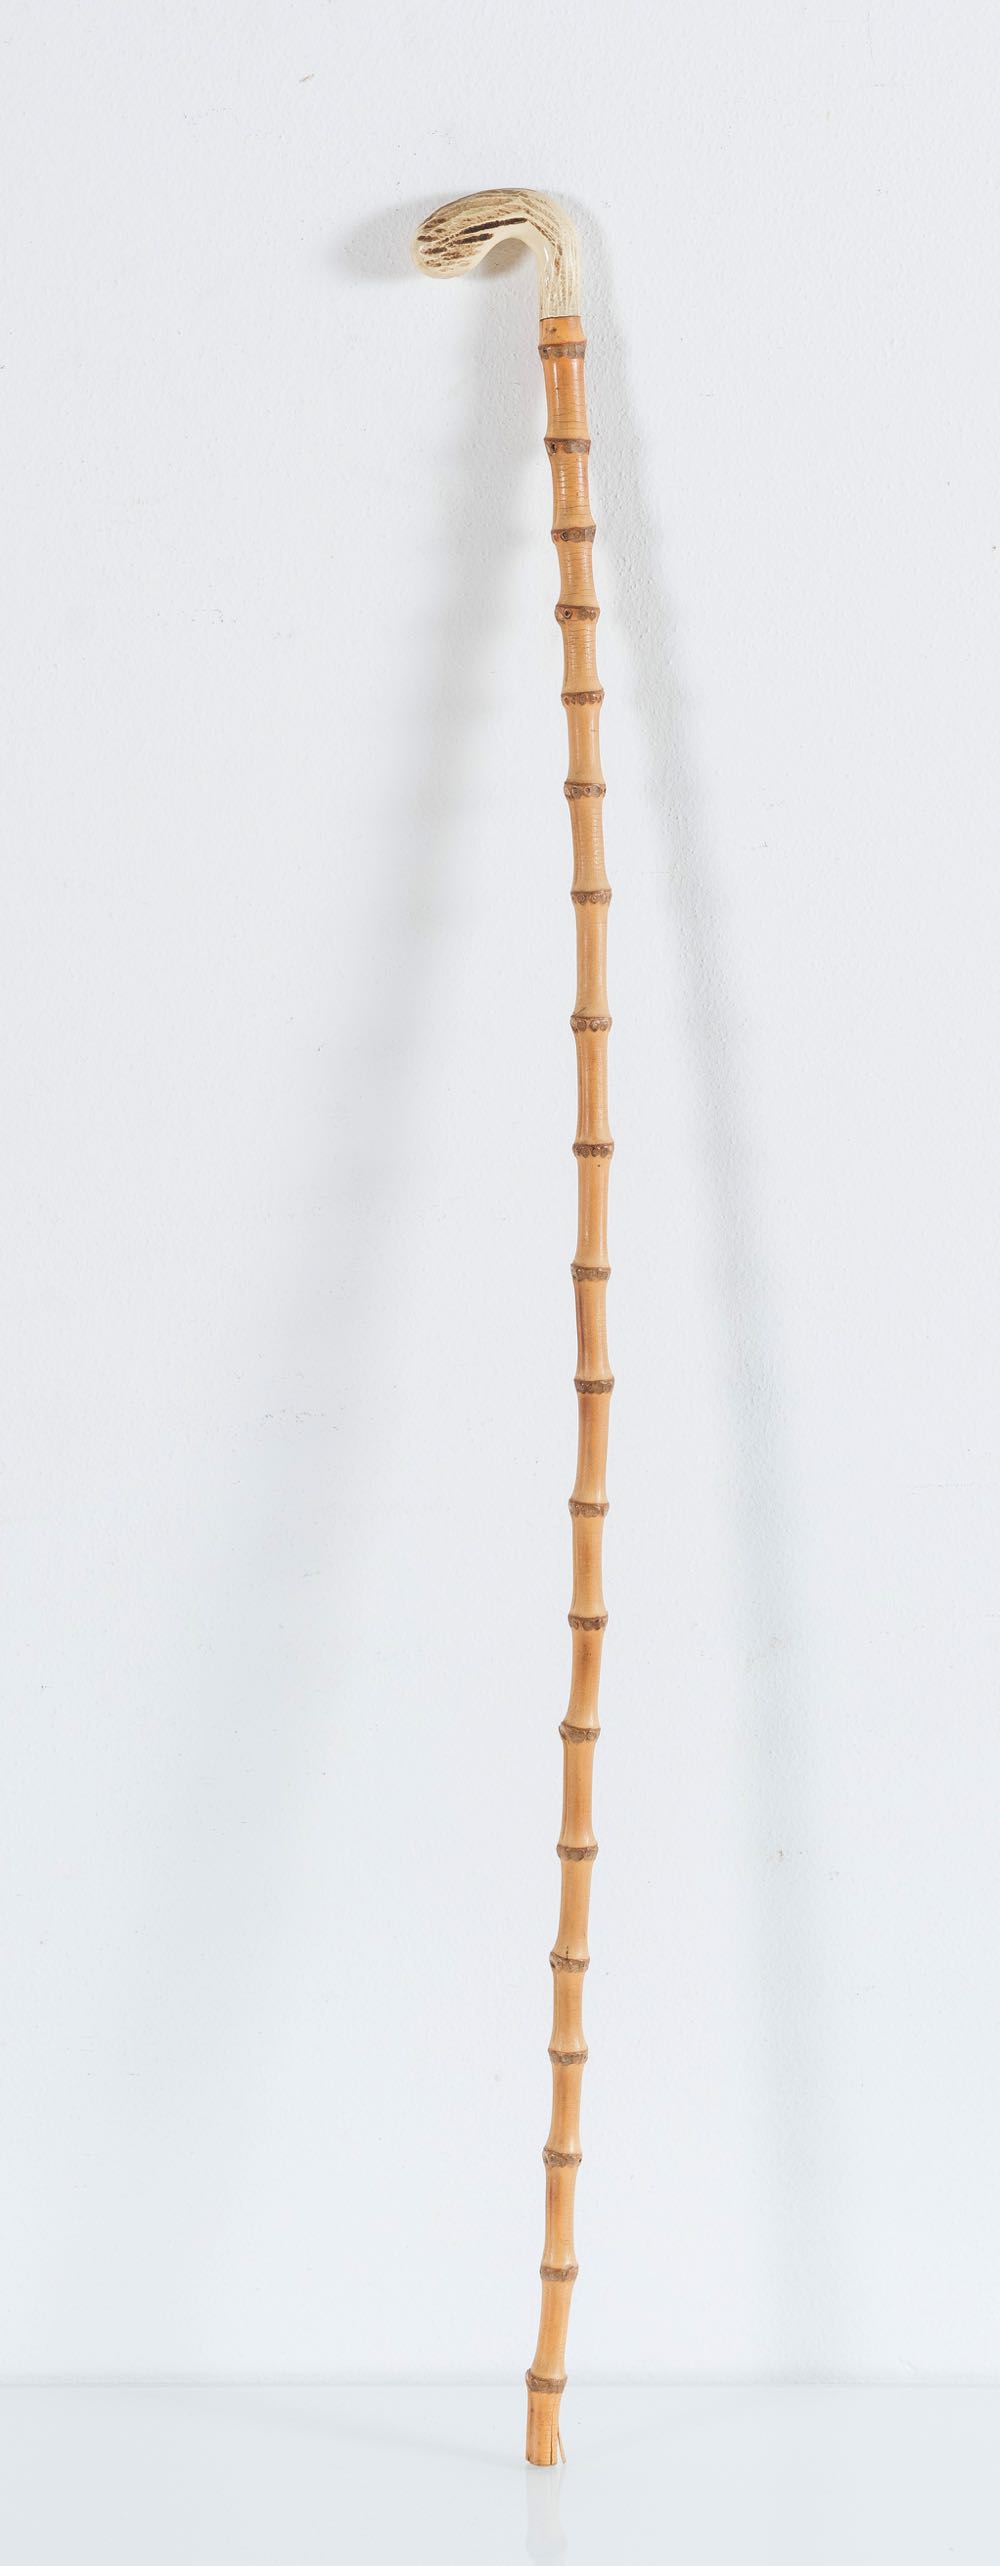 Bastone da passeggio in bambù con impugnatura in avorio, metà del XIX secolo. - Image 2 of 2